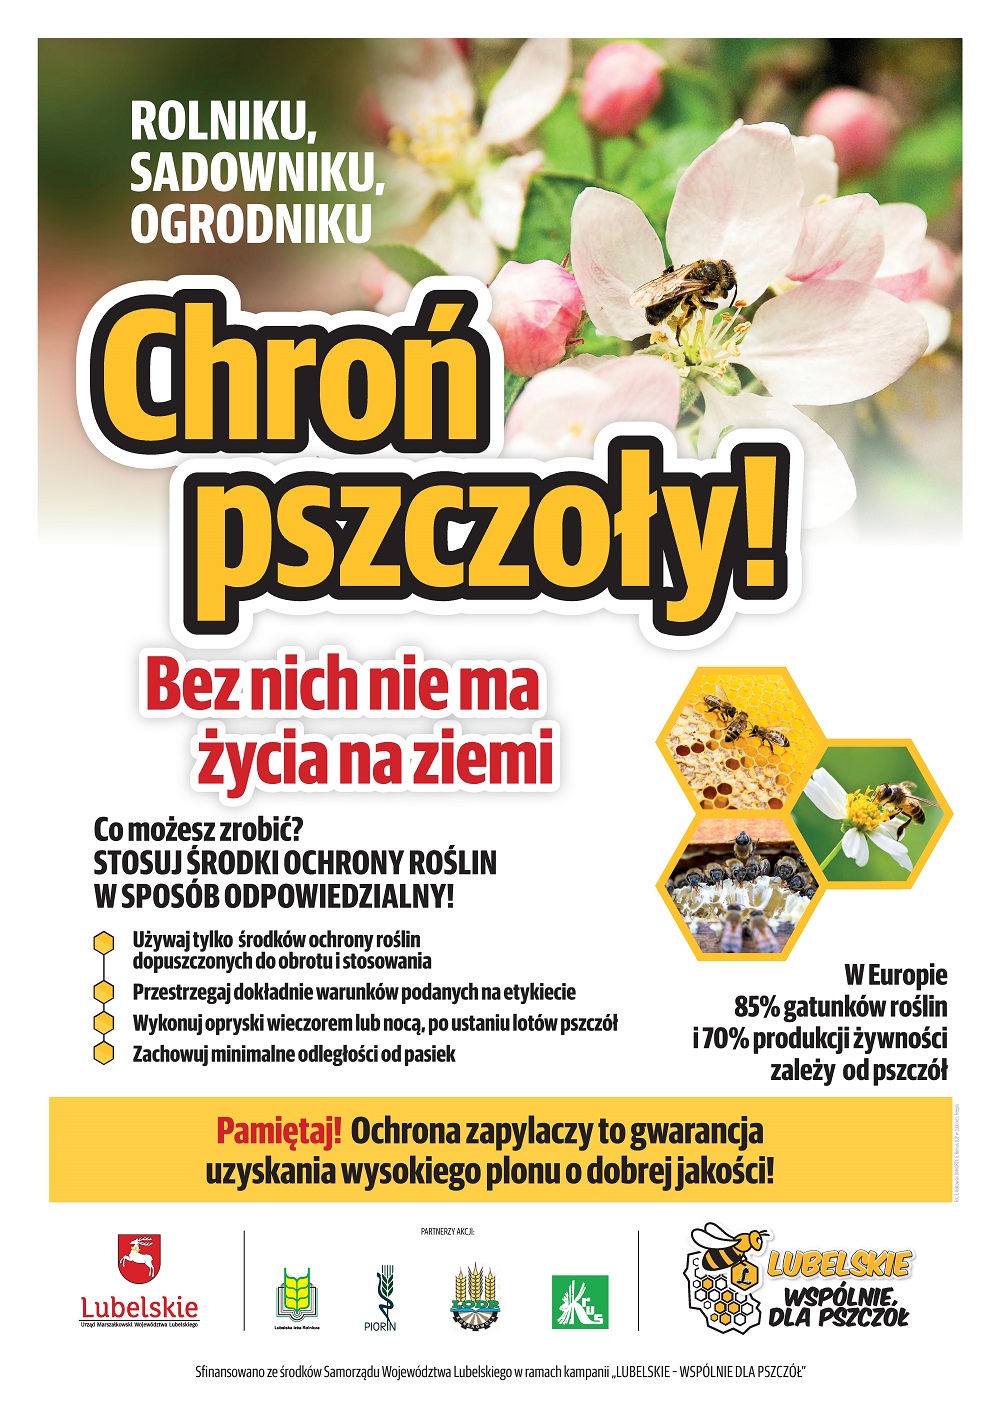 Chroń pszczoły! - plakat